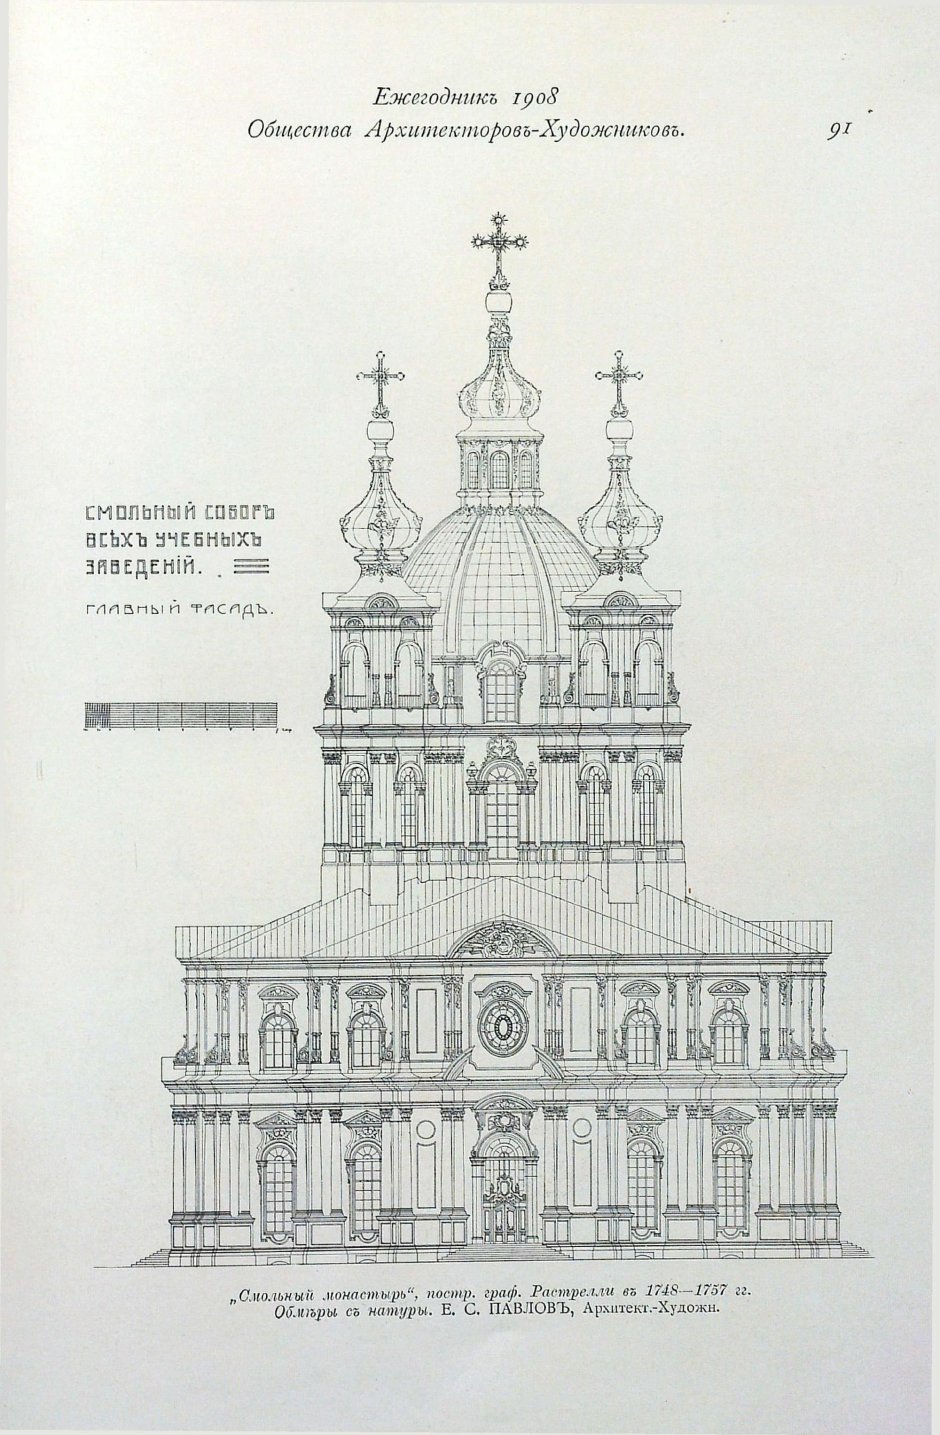 Смольный собор в Санкт-Петербурге фасад чертеж